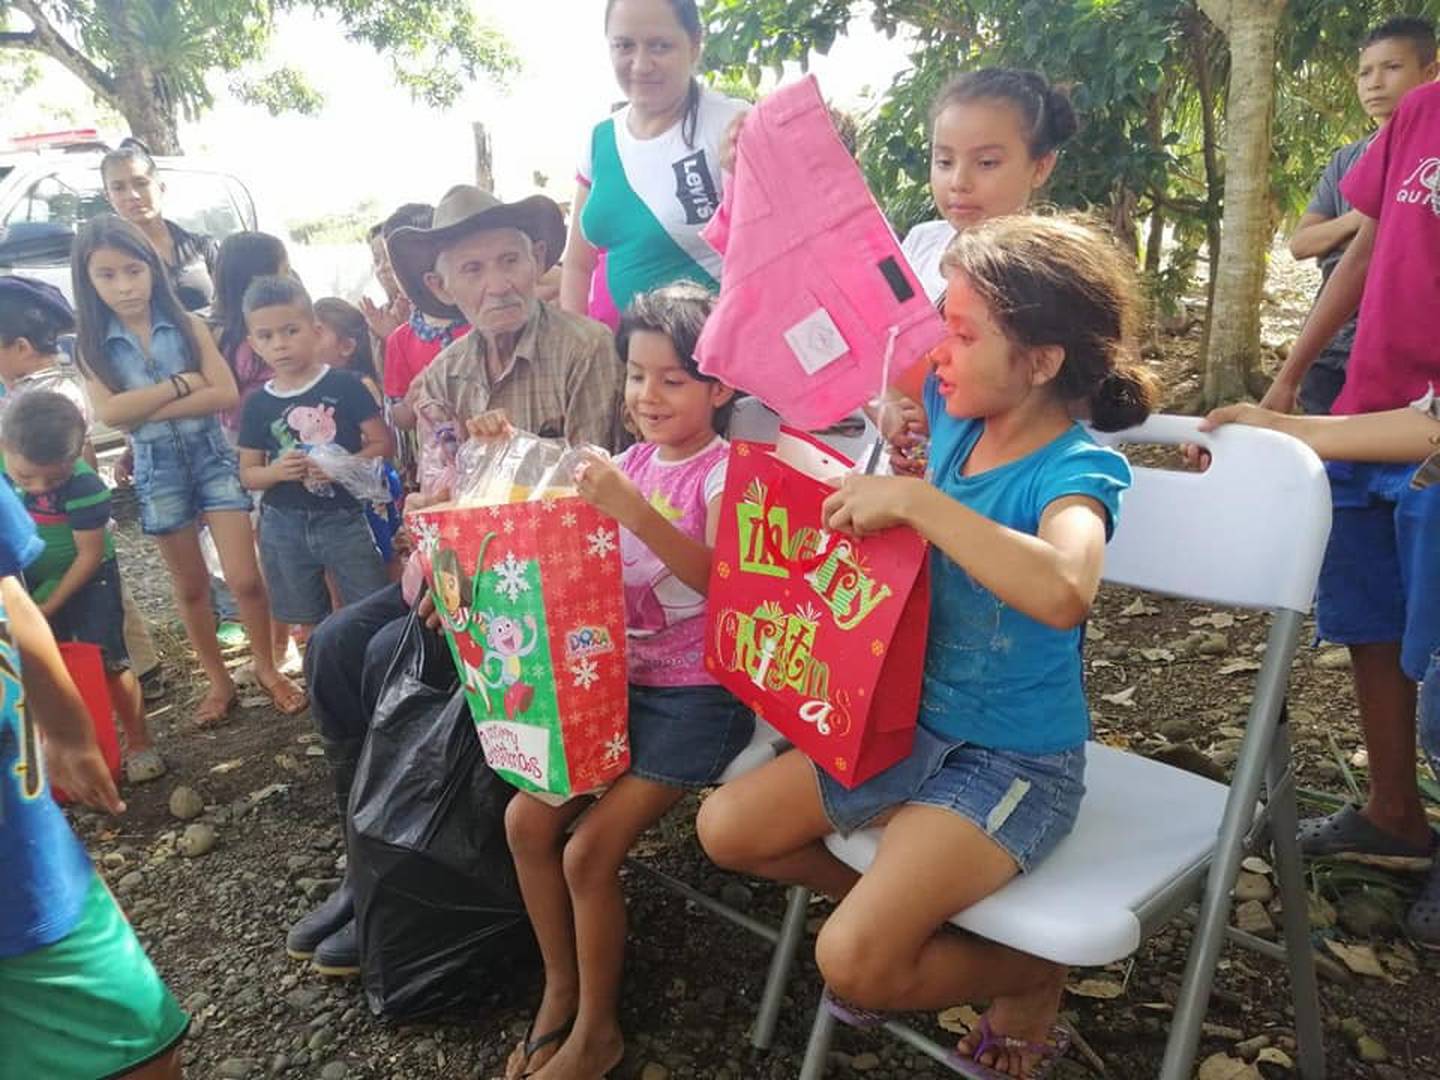 Oficiales de la Fuerza Pública de Upala organizan fiesta para ayudar a familia de escazos recursos en Upala. Foto MSP.